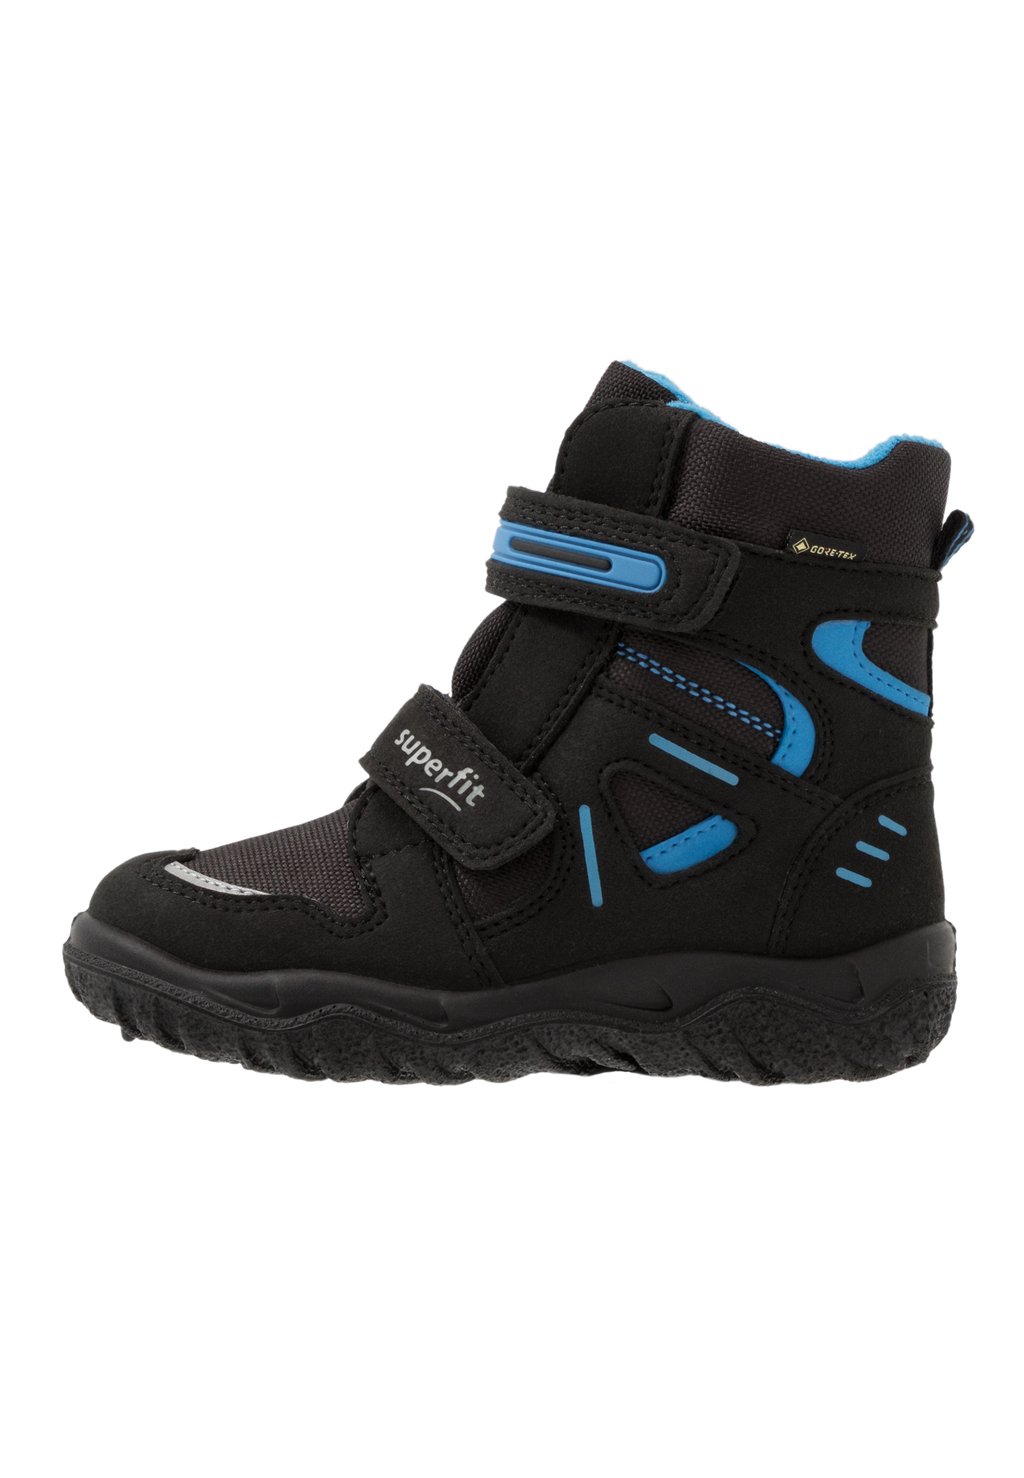 Зимние ботинки/зимние ботинки HUSKY Superfit, цвет schwarz/blau